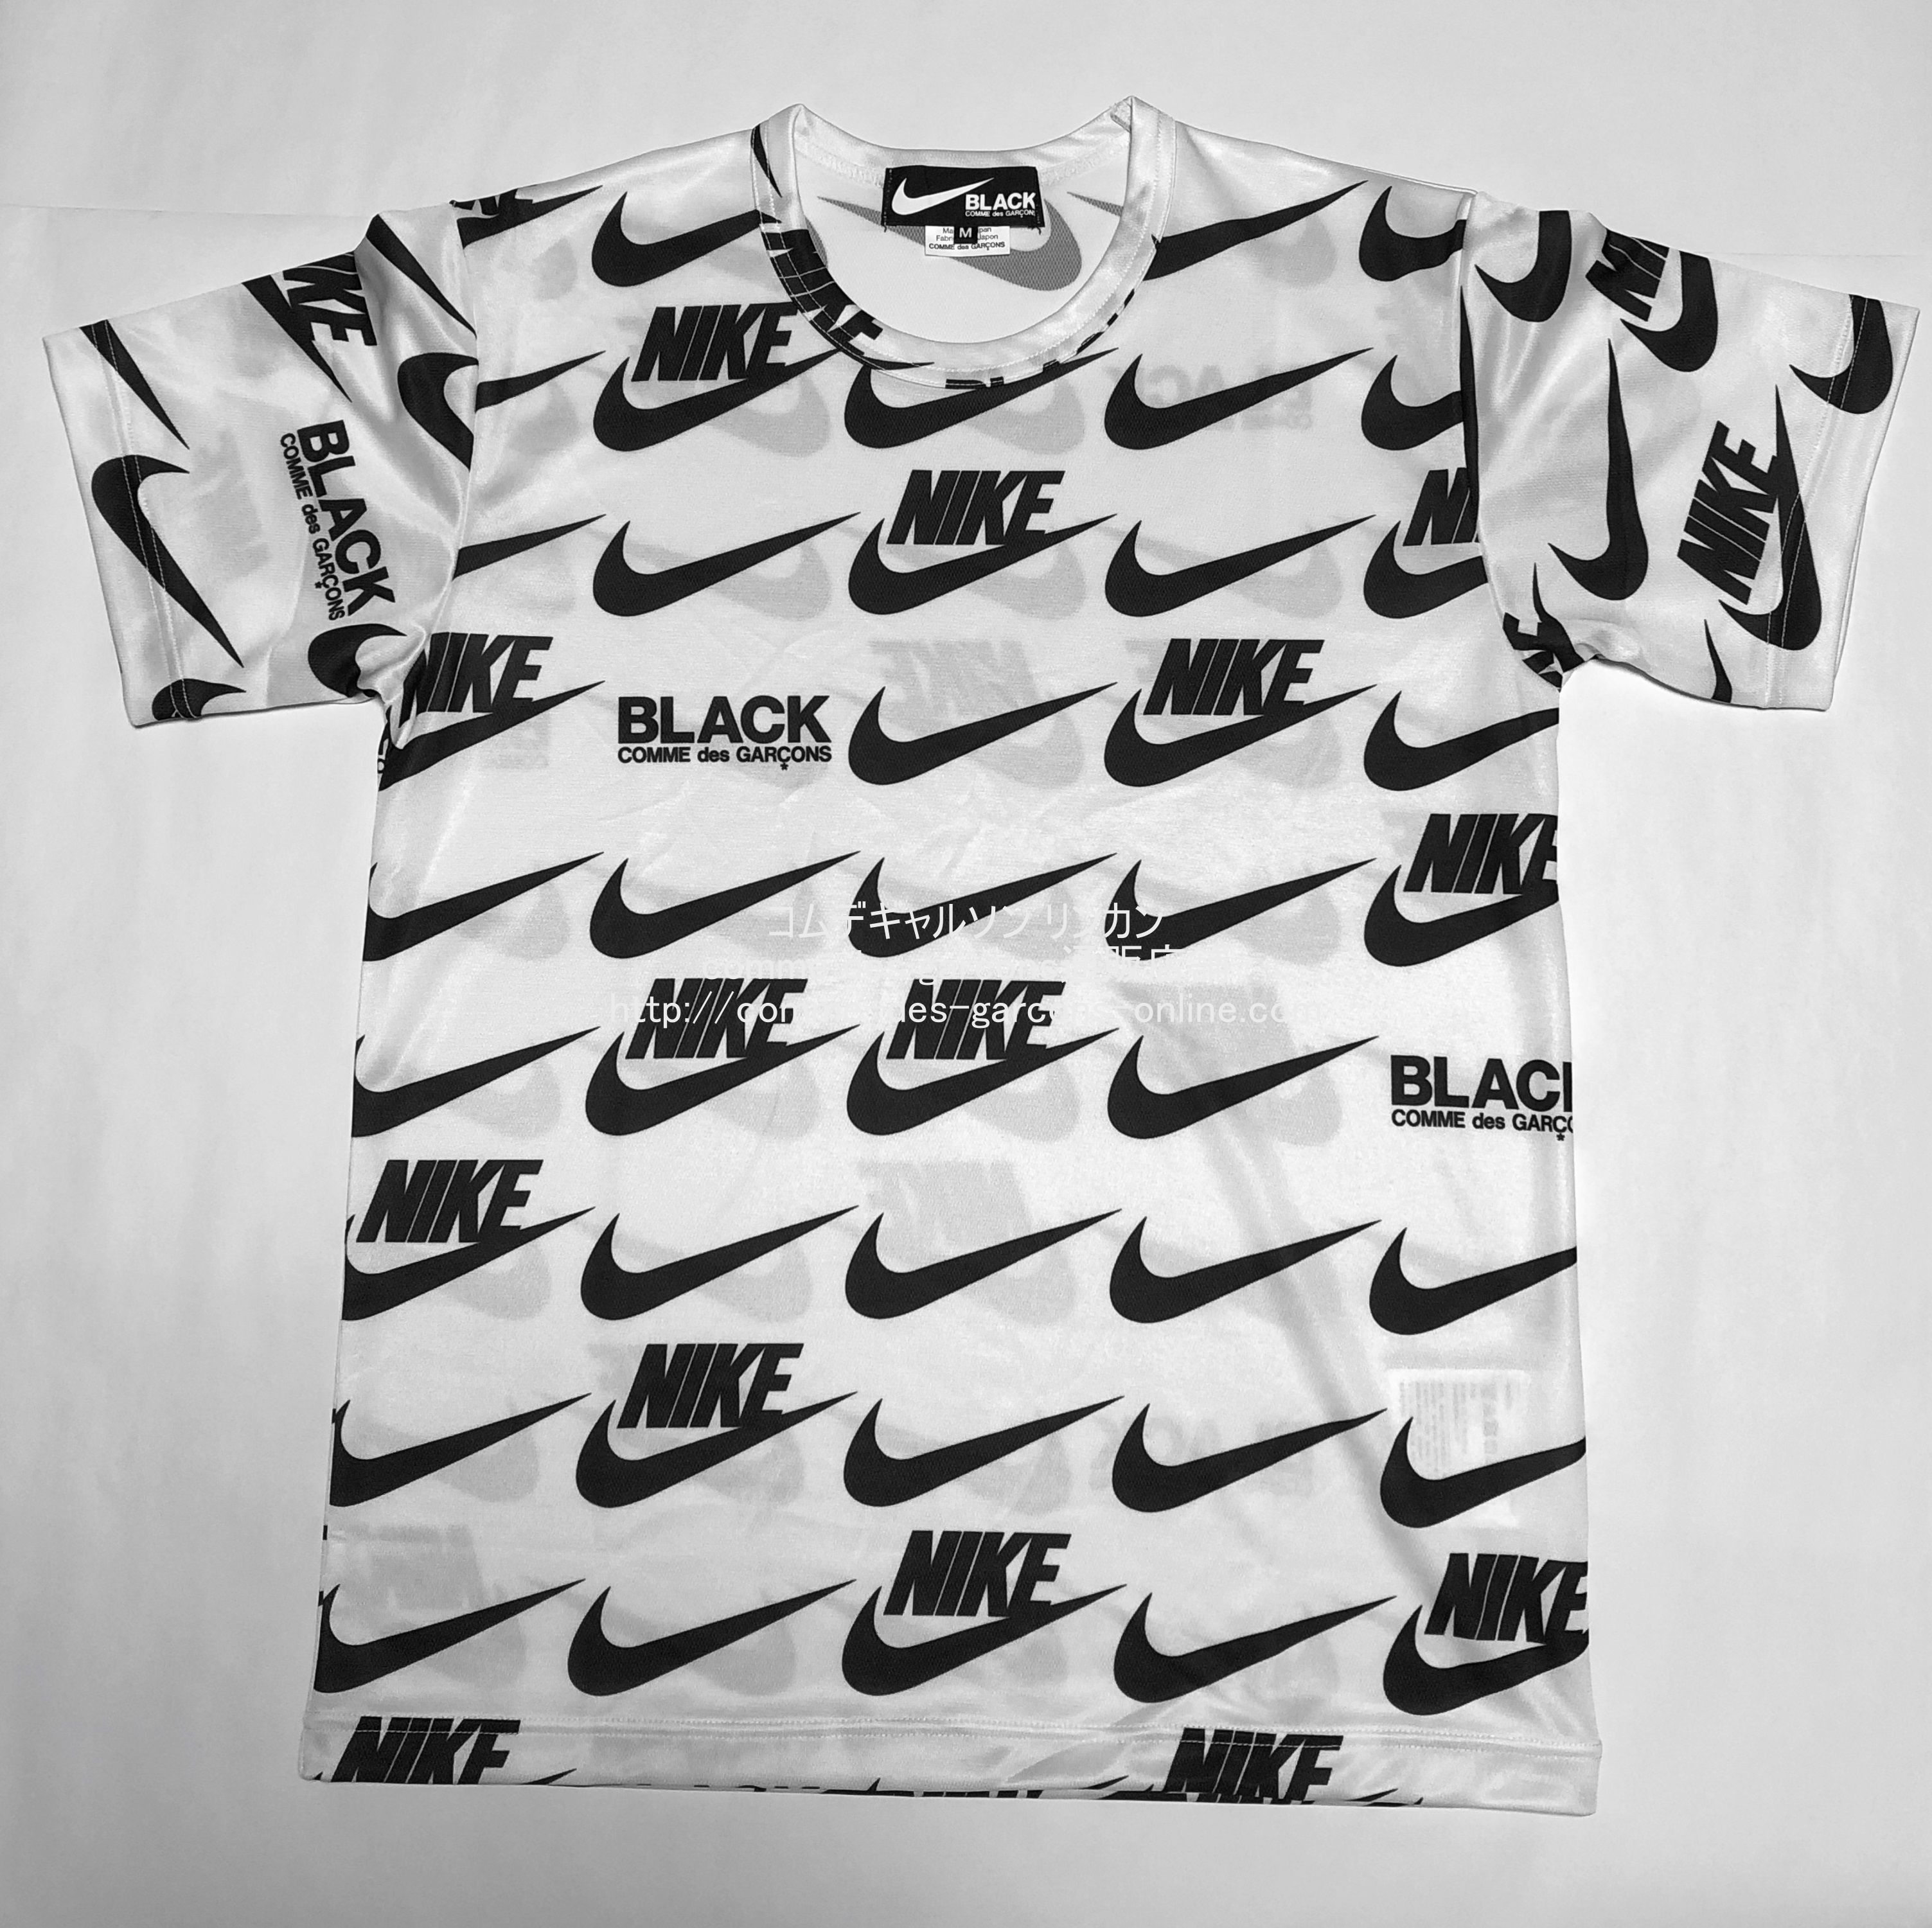 ブラック コムデギャルソン限定ナイキTシャツ（2019AW） コムデギャルソン リンカン-comme des garcons通販店舗